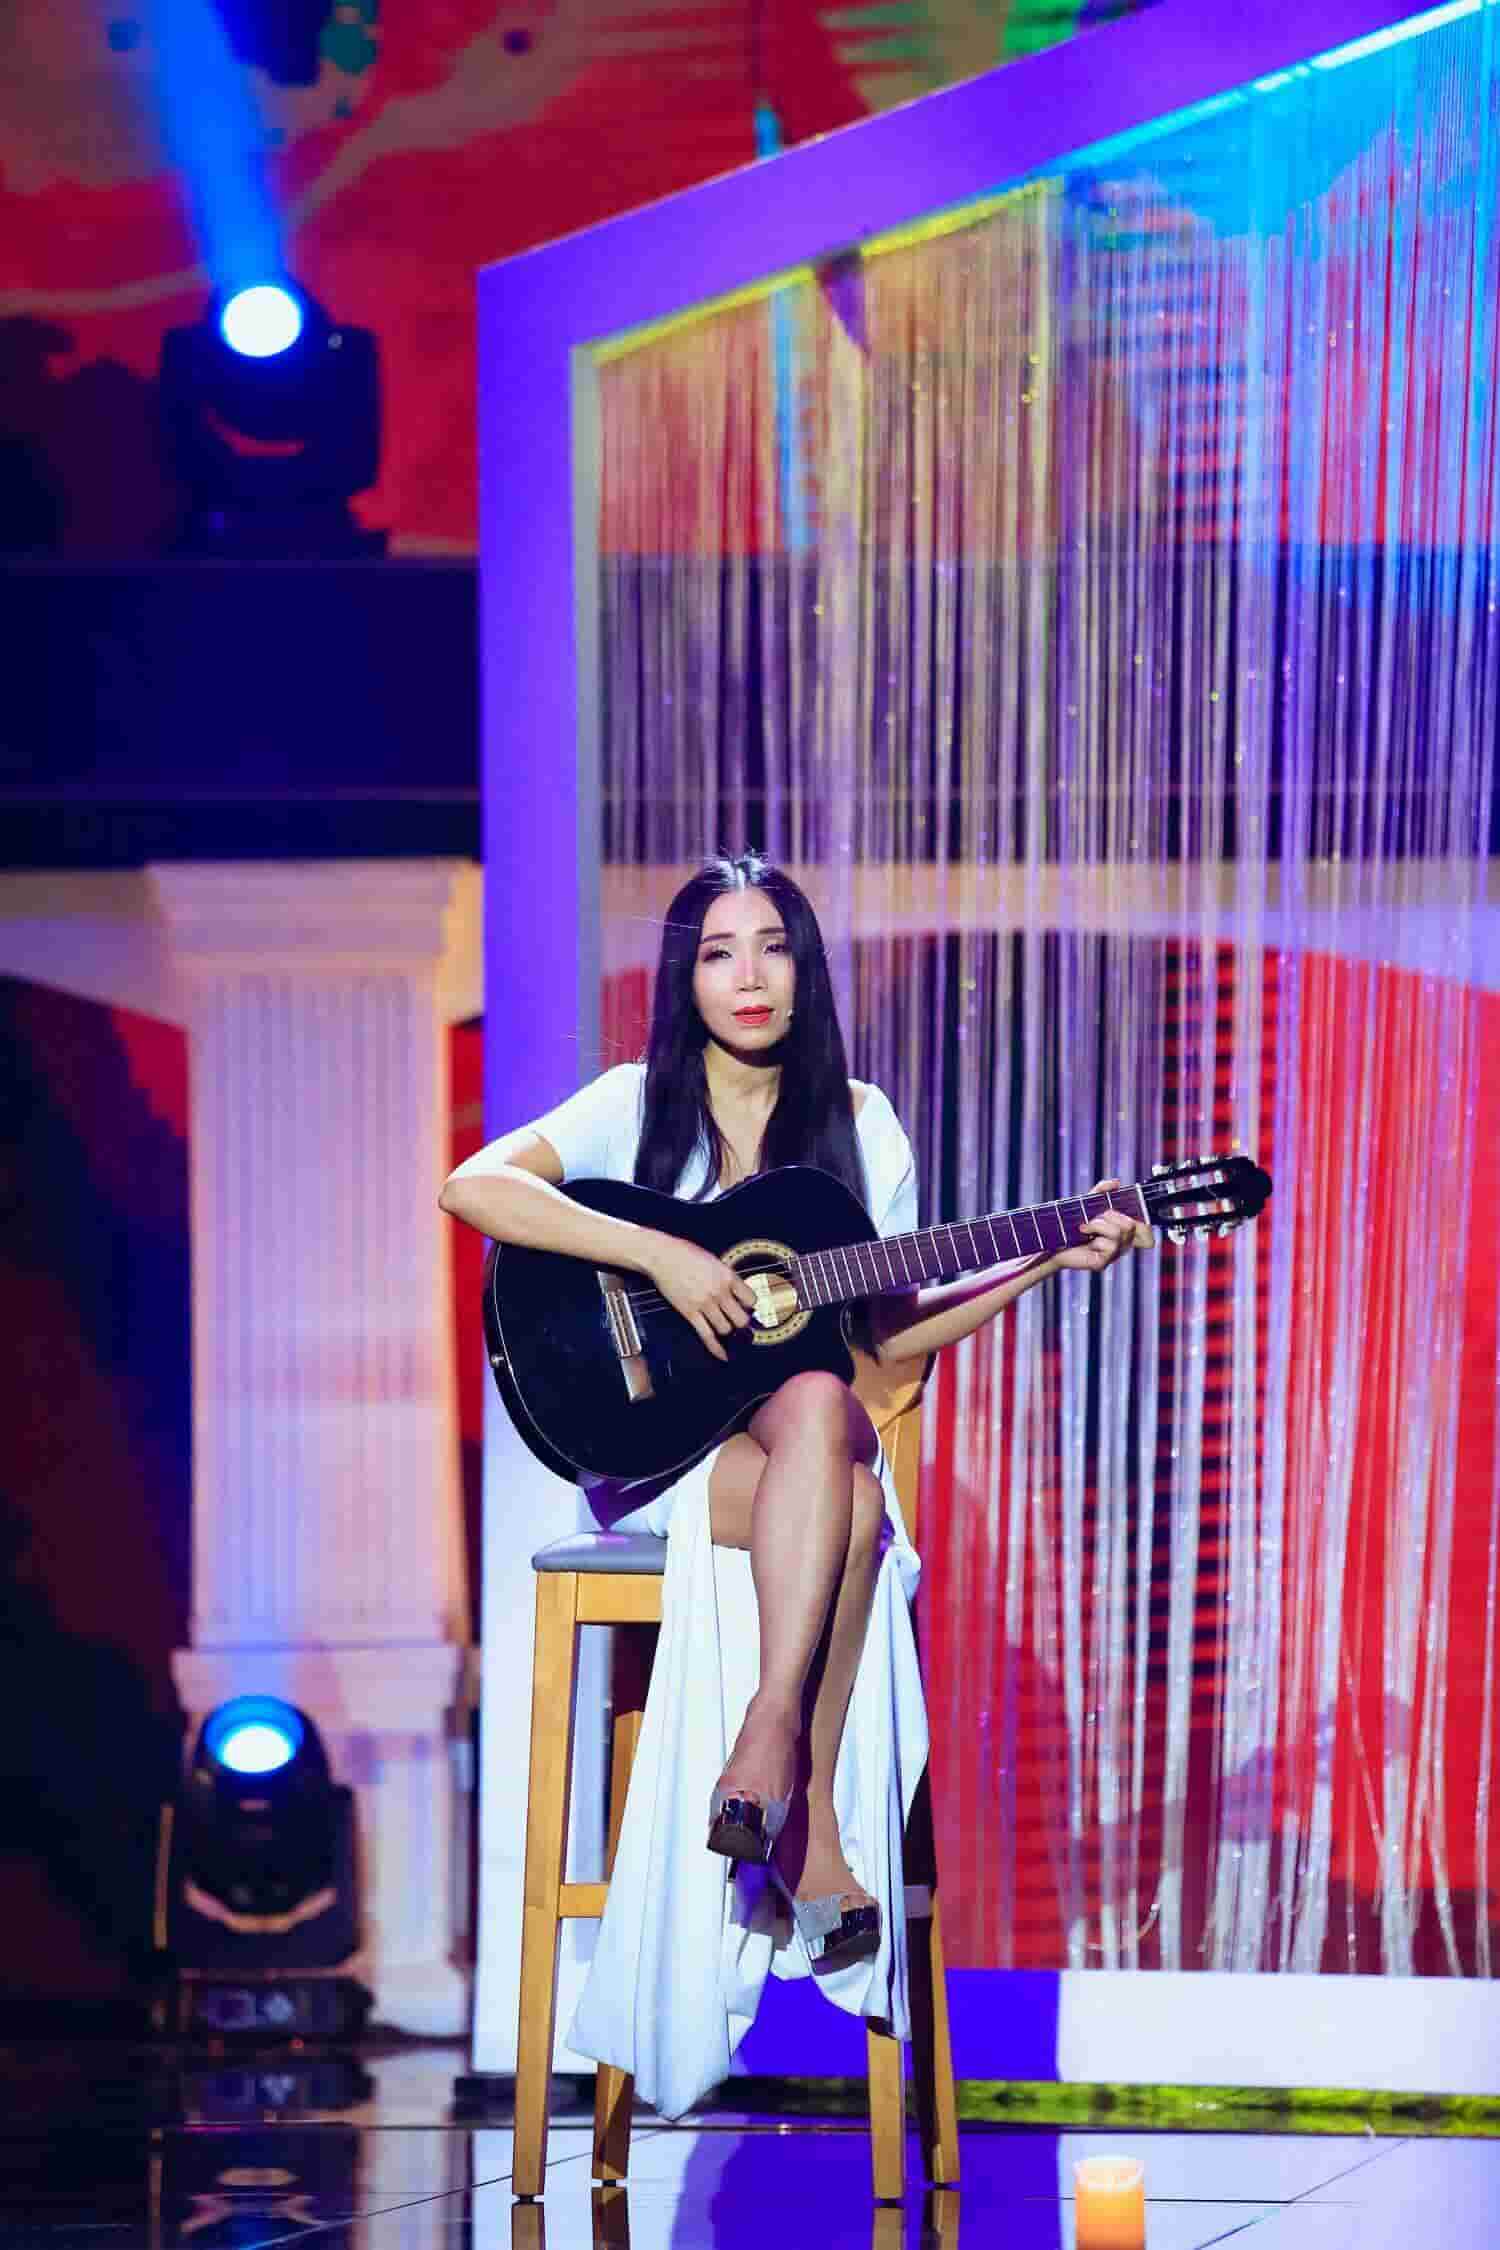 Nhắc đến Quỳnh Lan, chắc hẳn những người yêu nhạc đều nhớ đến hình ảnh của cô ca sĩ tóc dài thướt tha, buông lơi bên cây đàn guitar